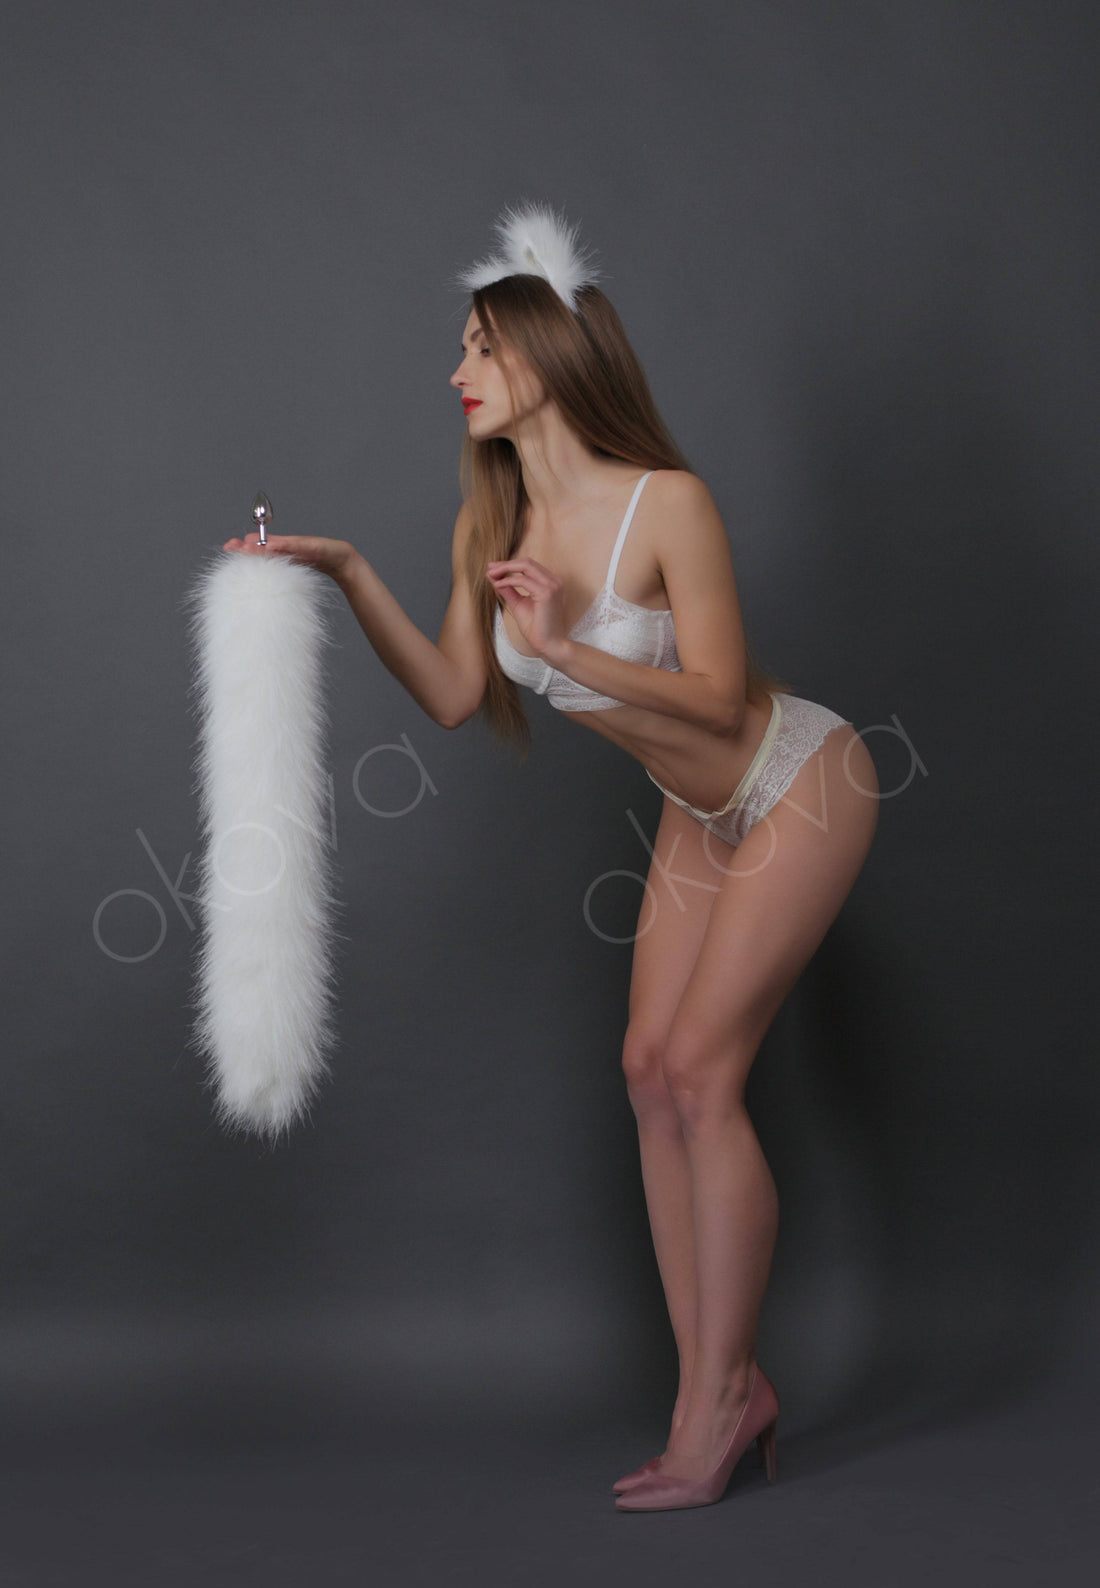 Cat tail butt plug white 29" - OKOVA